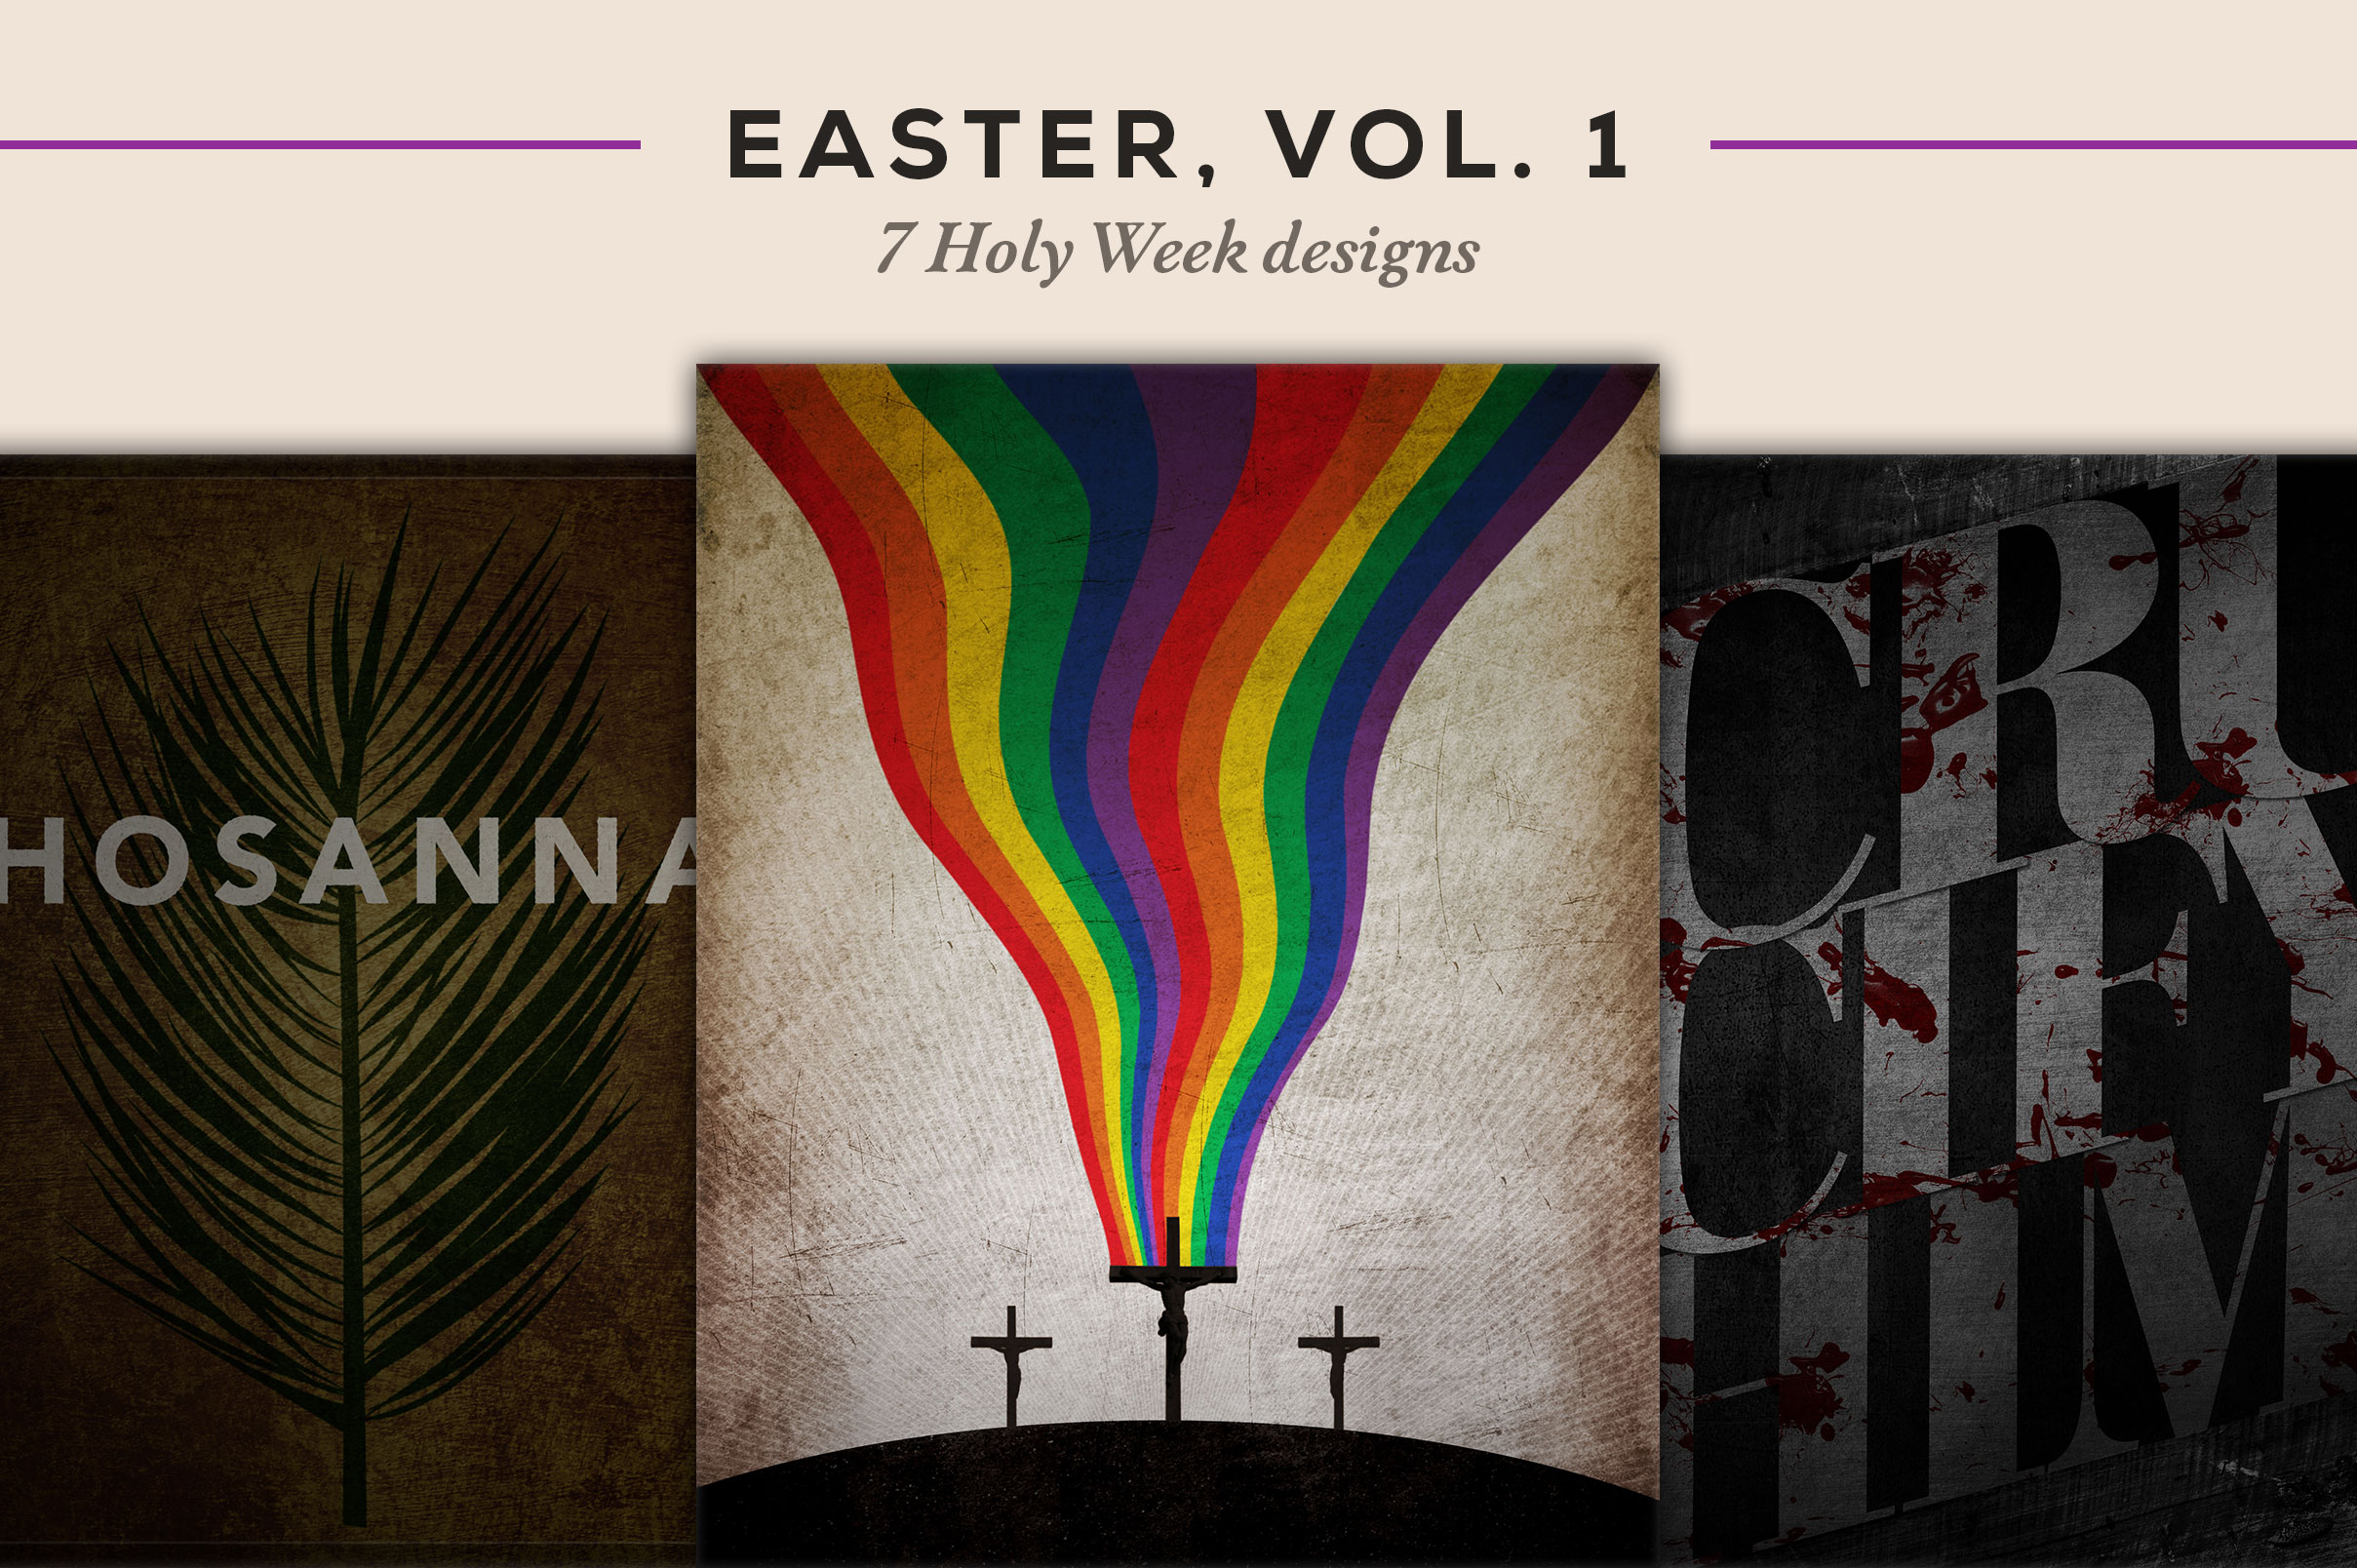 7 Holy Week designs